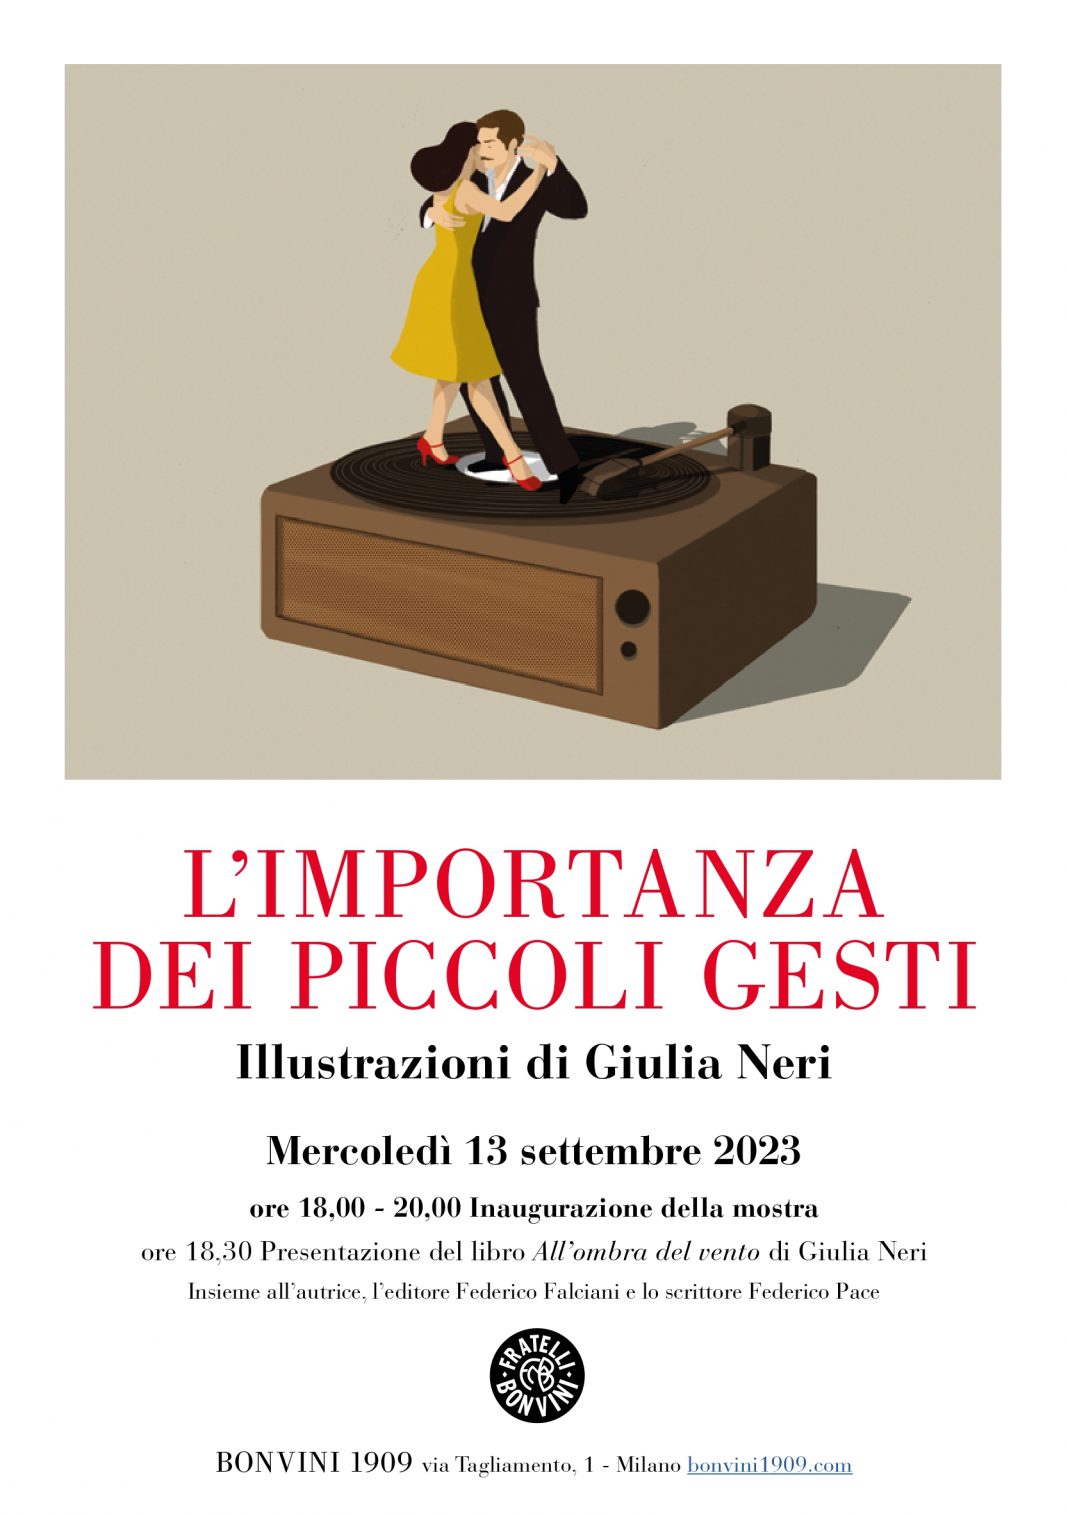 Giulia Neri – L’importanza dei piccoli gestihttps://www.exibart.com/repository/media/formidable/11/img/93f/GiuliaNericomunicato2-1068x1514.jpg